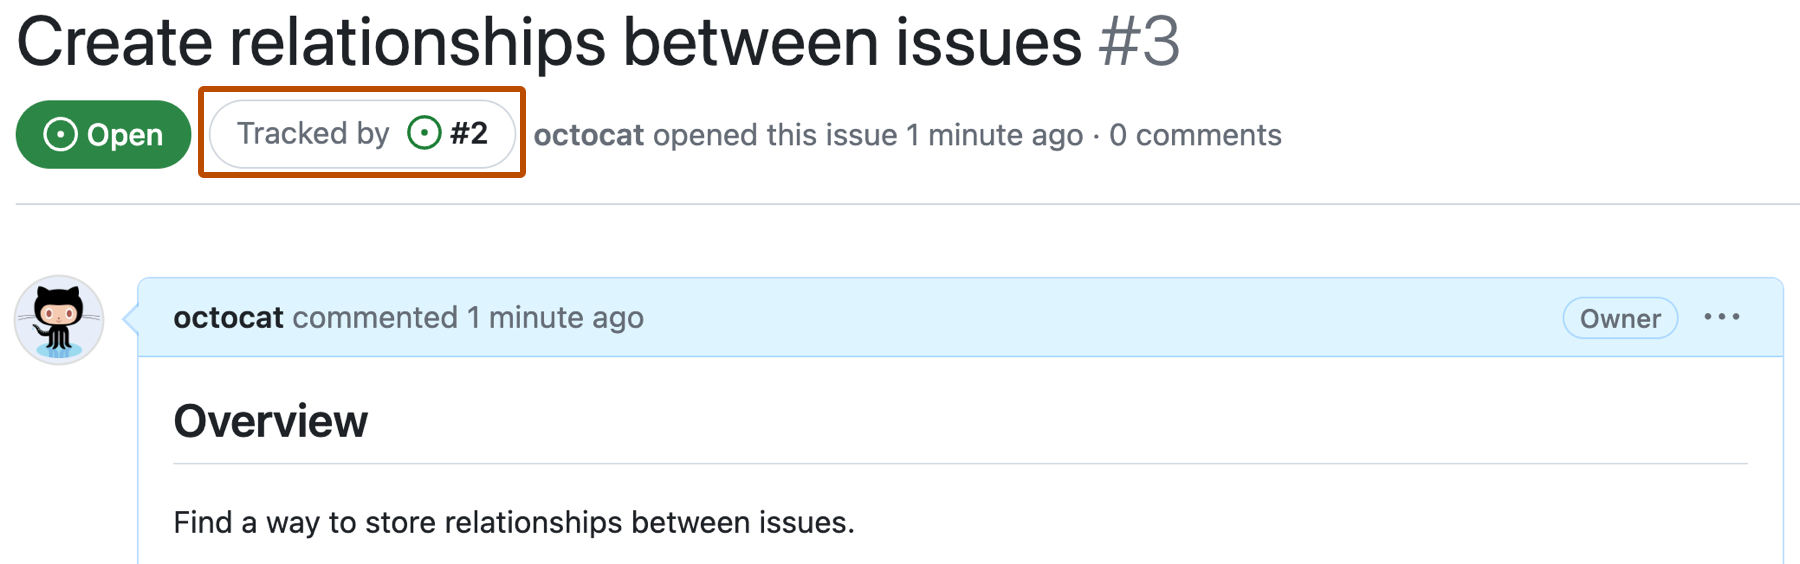 Снимок экрана: проблема GitHub с именем "Создание связей между проблемами" и нумерованной проблемой 3. Кнопка под заголовком проблемы с надписью "Отслеживаемая по проблеме #2" описана в темно-оранжевый цвет.